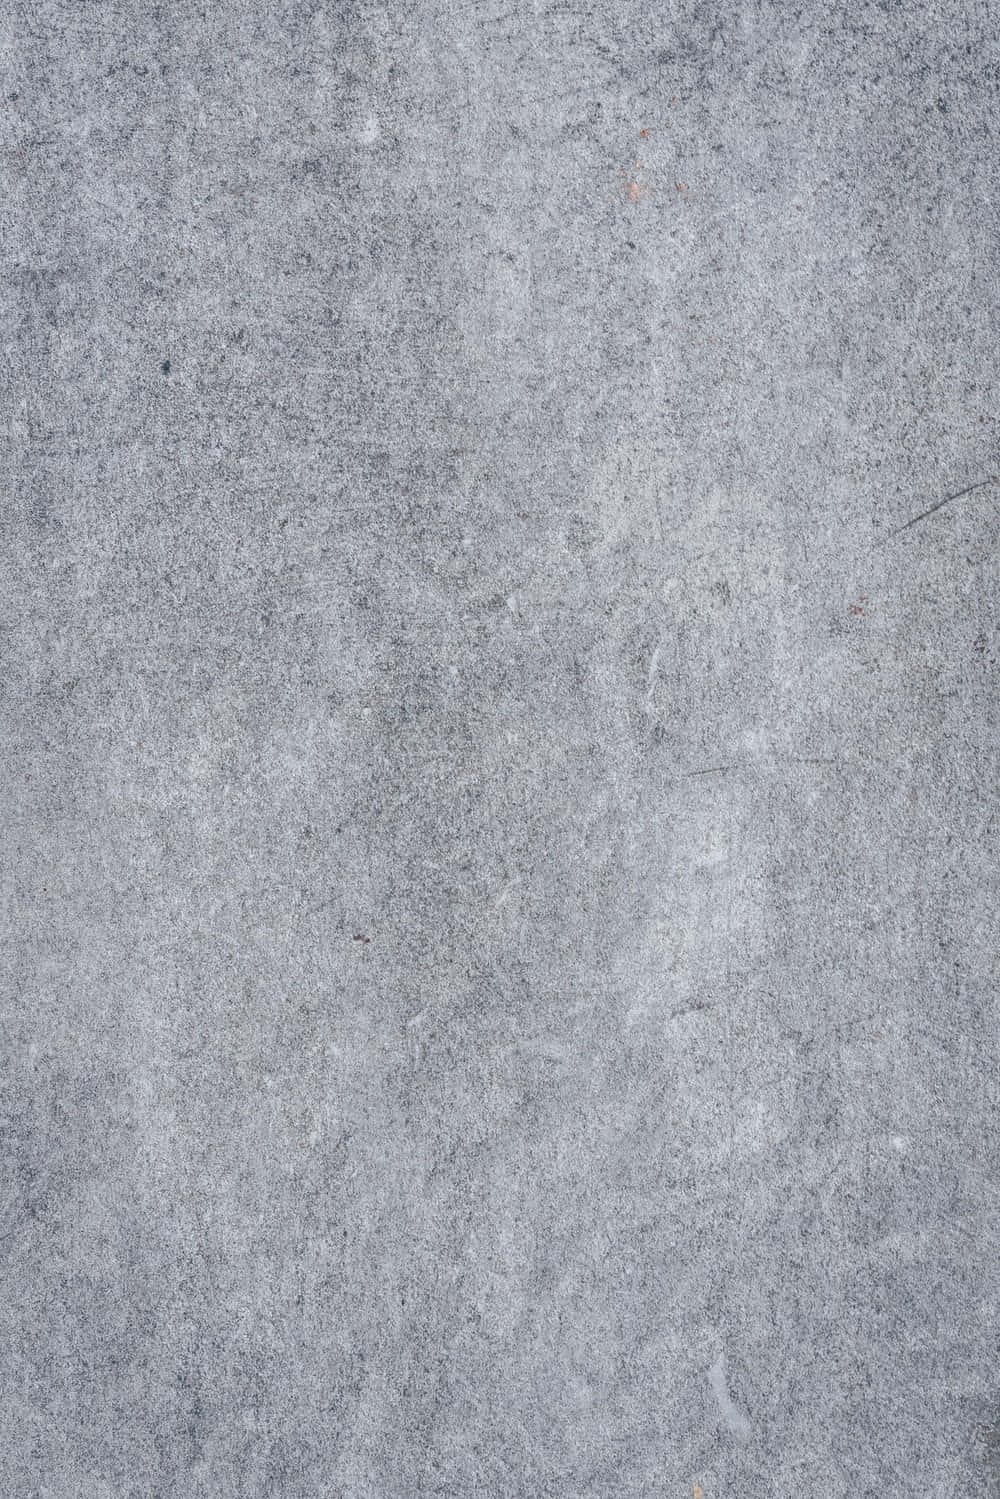 Microcement Concrete Texture Picture